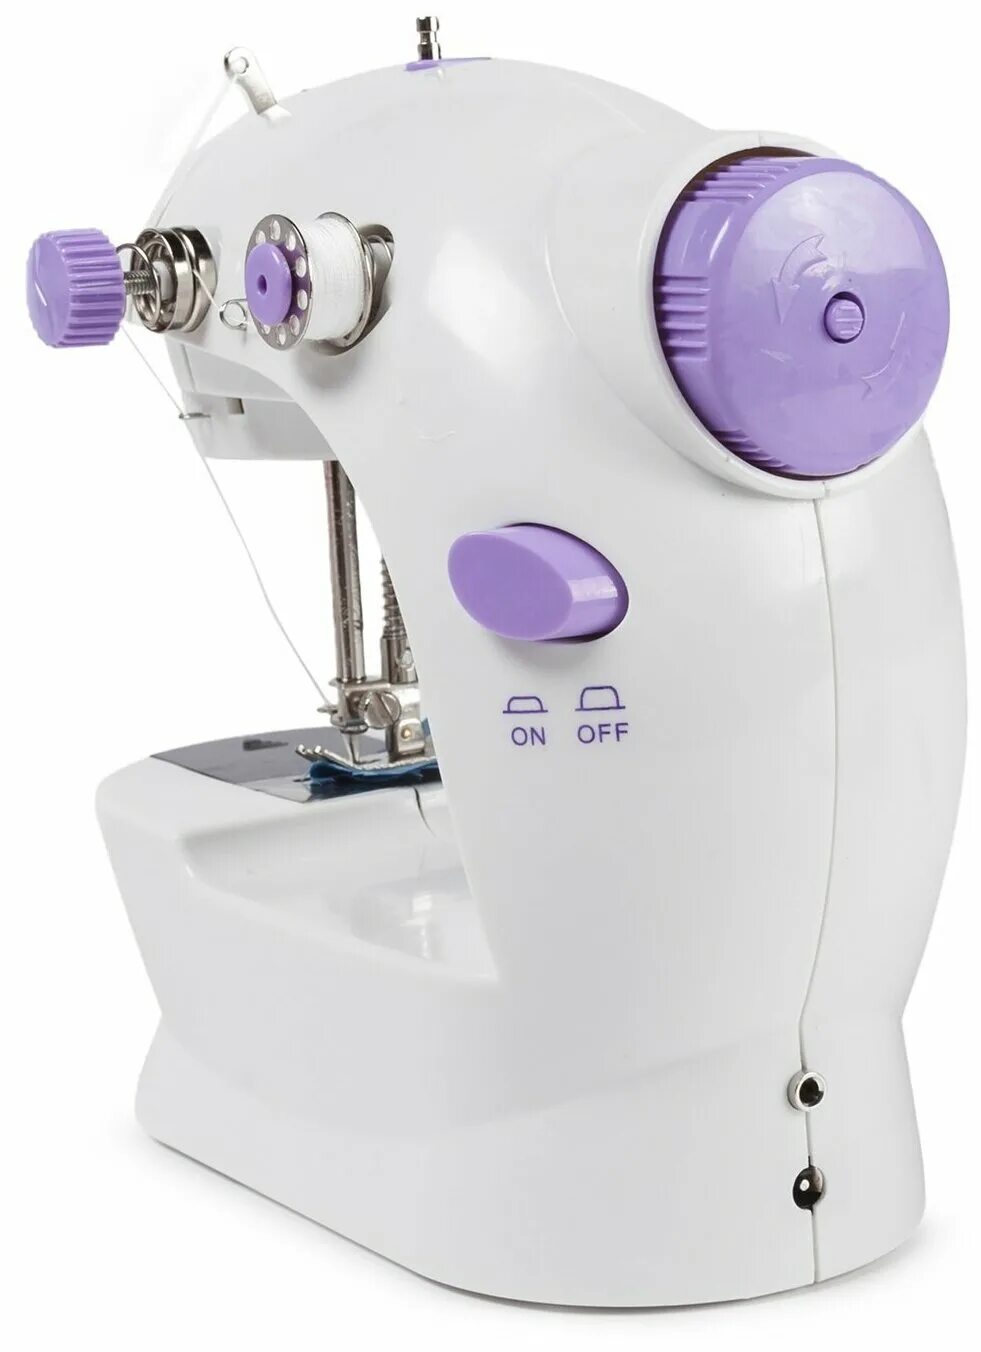 Мини машинка sm 202a. Mini Sewing Machine SM-202a. Швейная машина SM-202a. Mini Sewing Machine SM-202a в Узбекистане. Швейная машина SM-202a маховик.